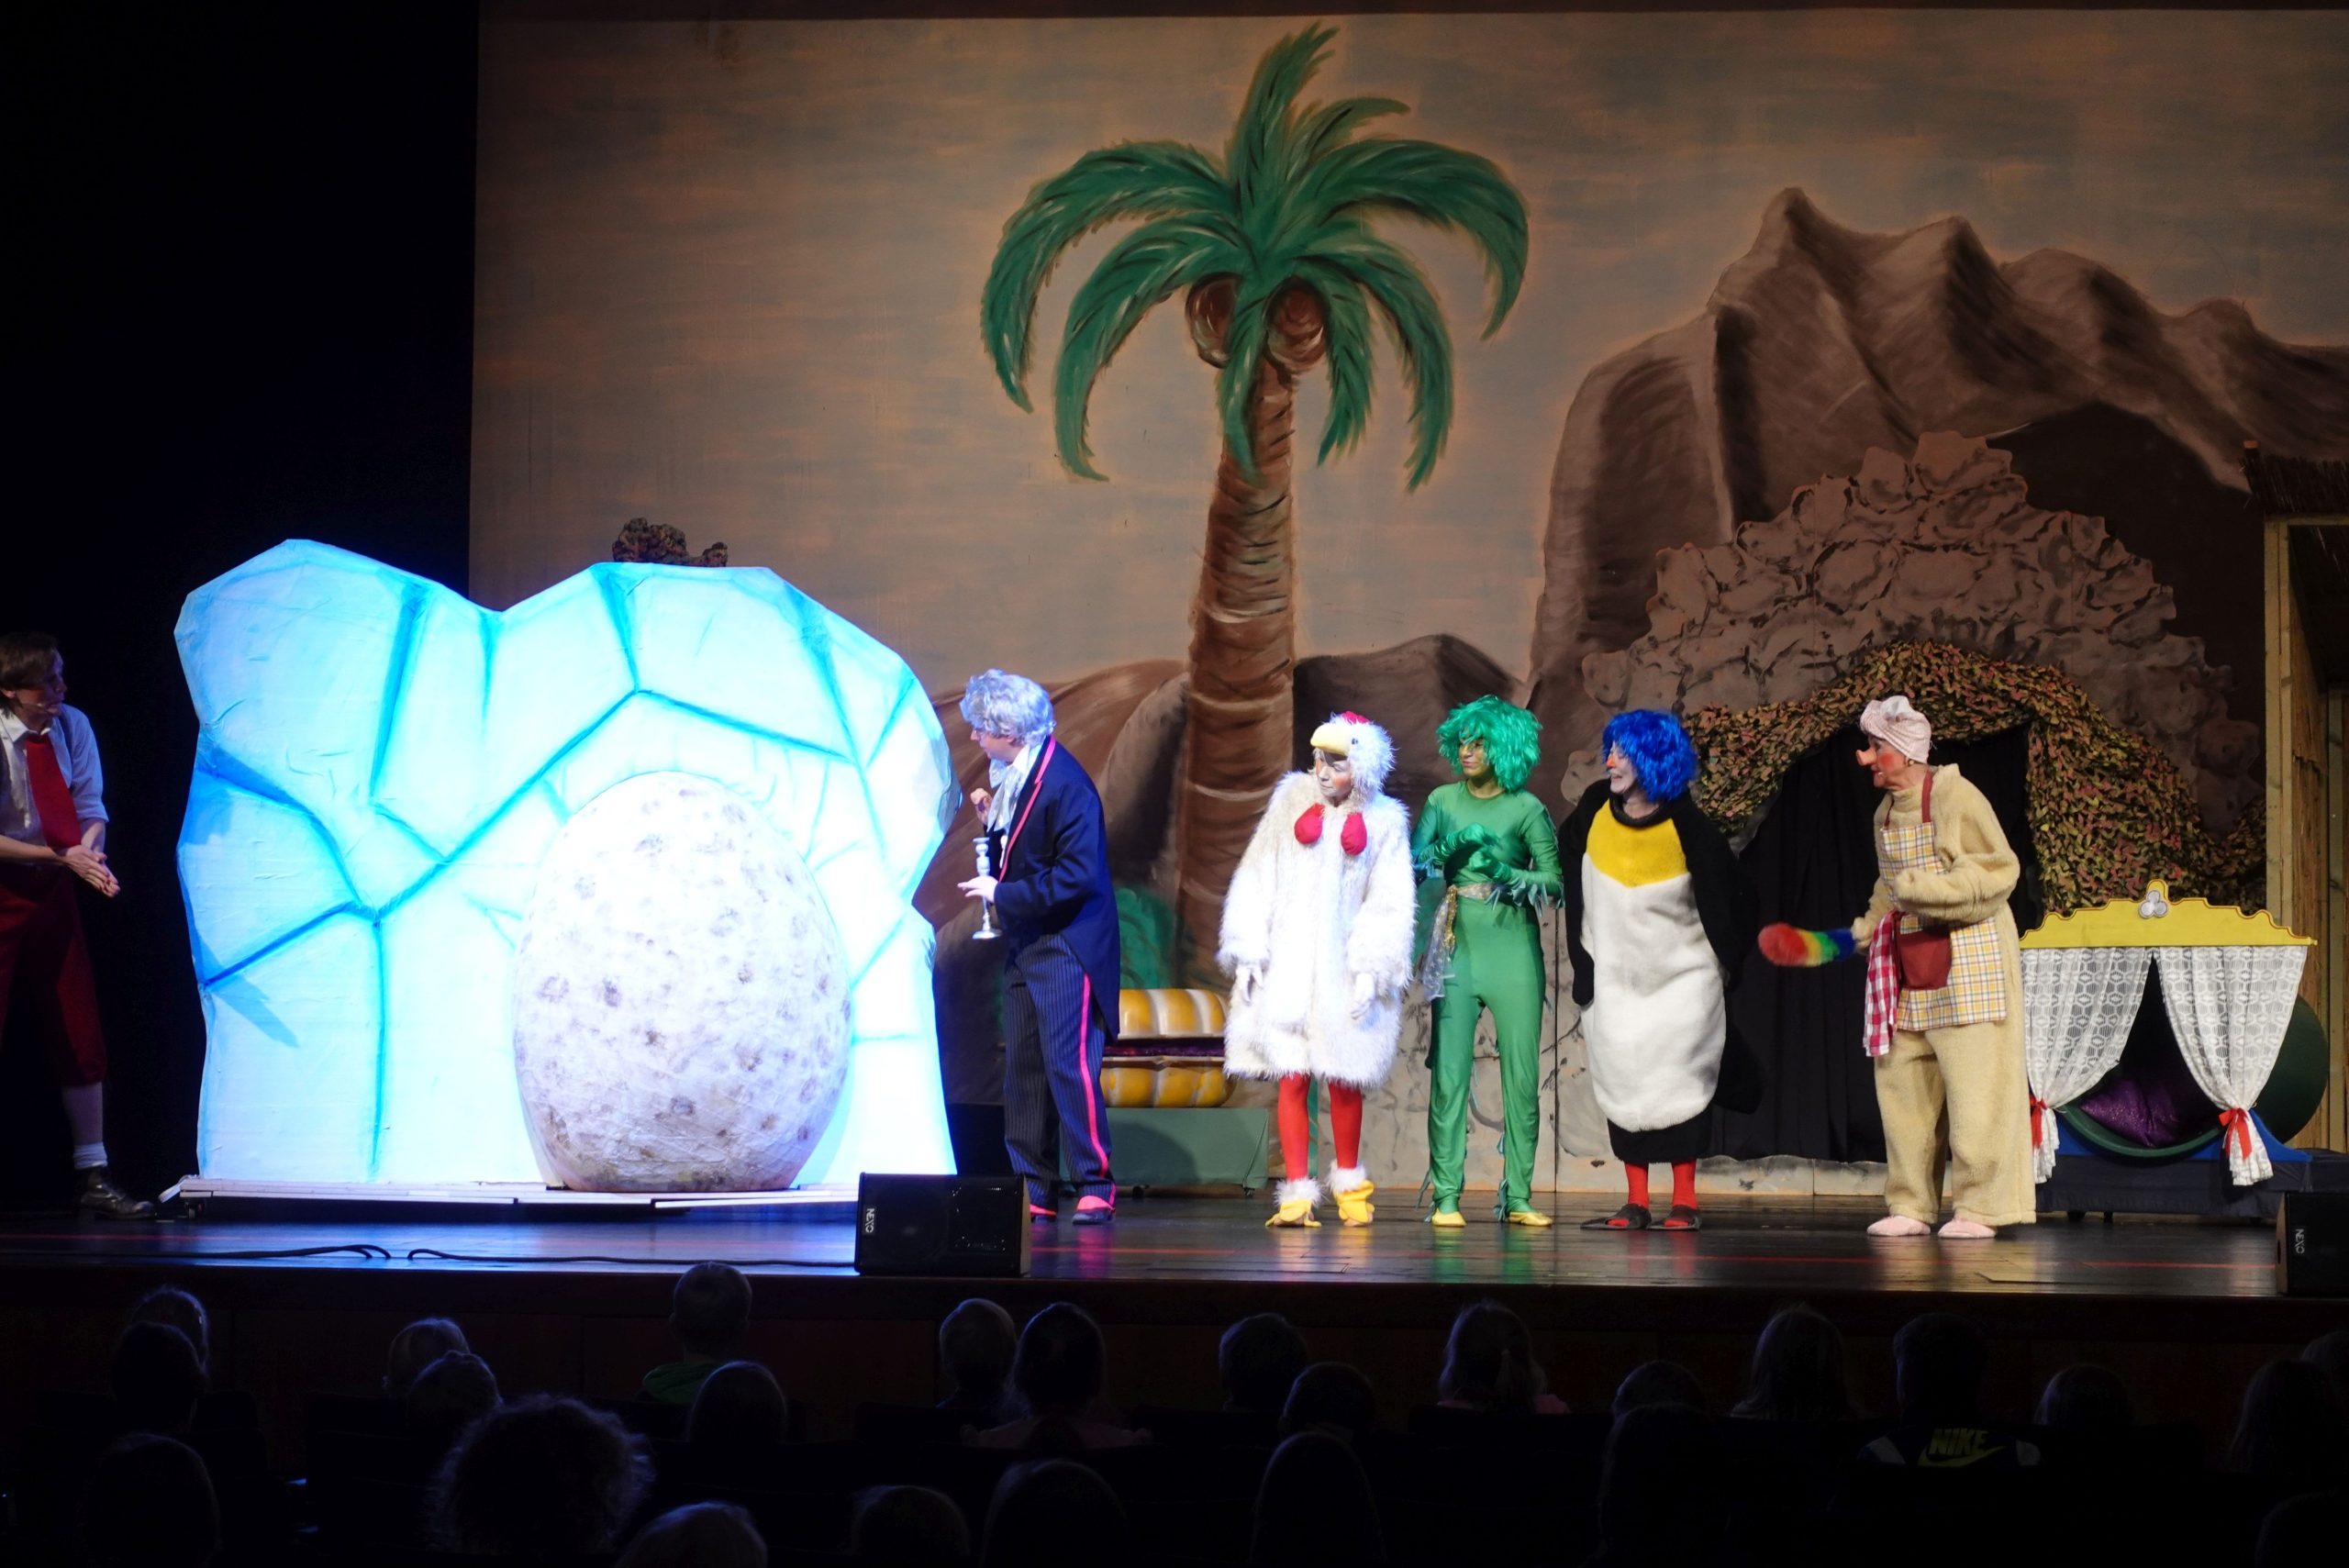 Urmel aus dem Eis - ein riesiges Ei wird auf die Bühne geschoben